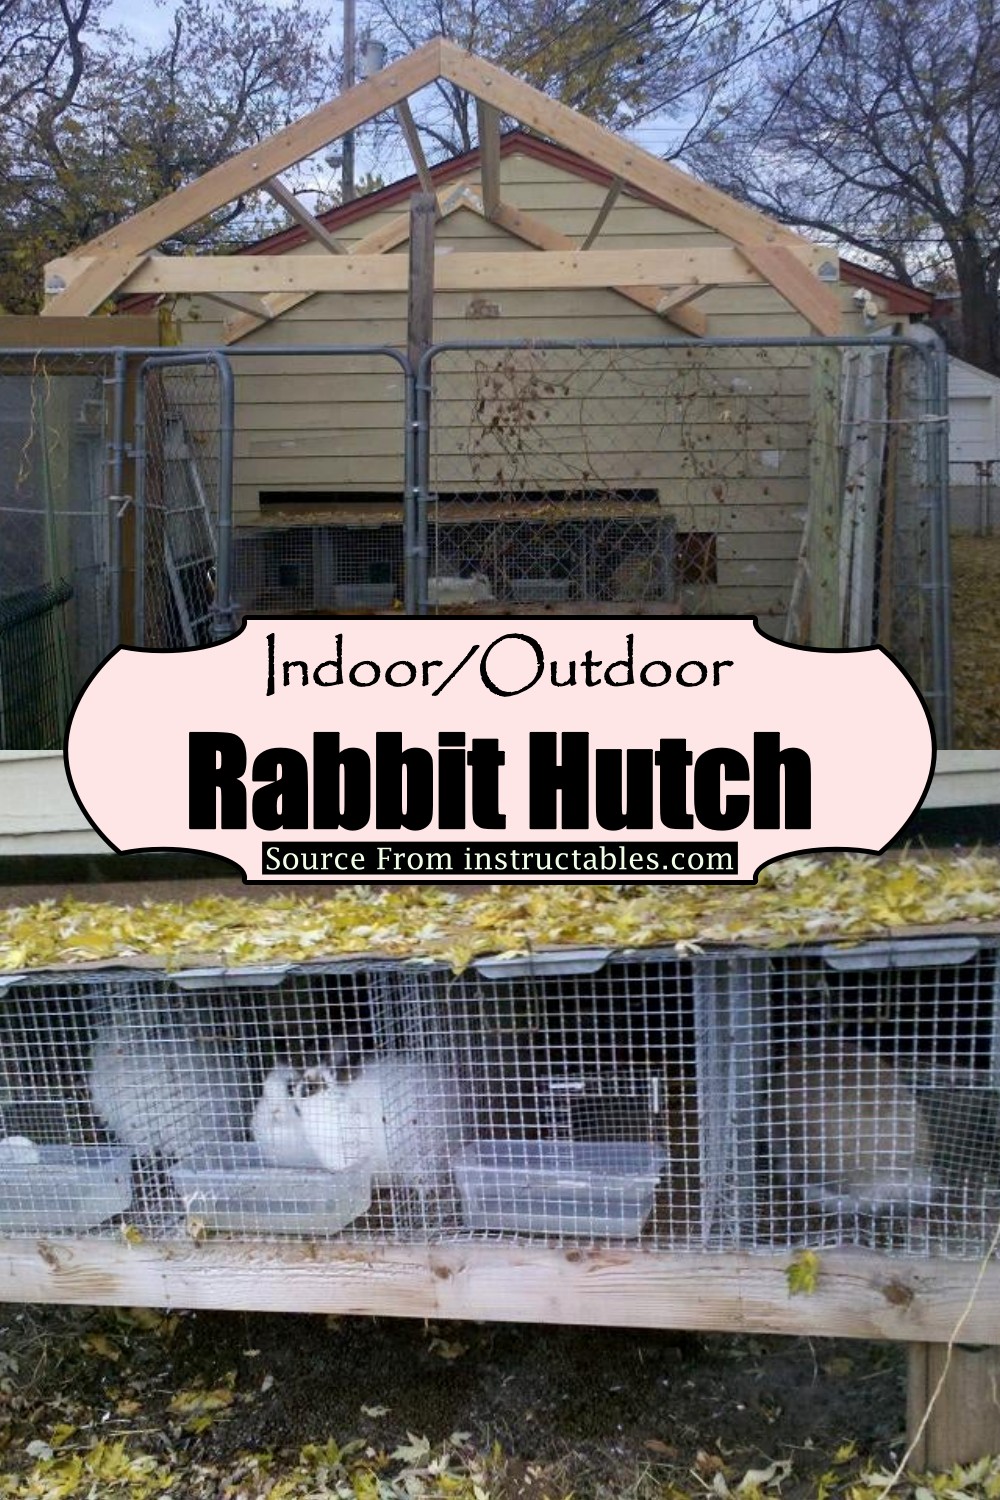 Indoor/Outdoor Rabbit Hutch